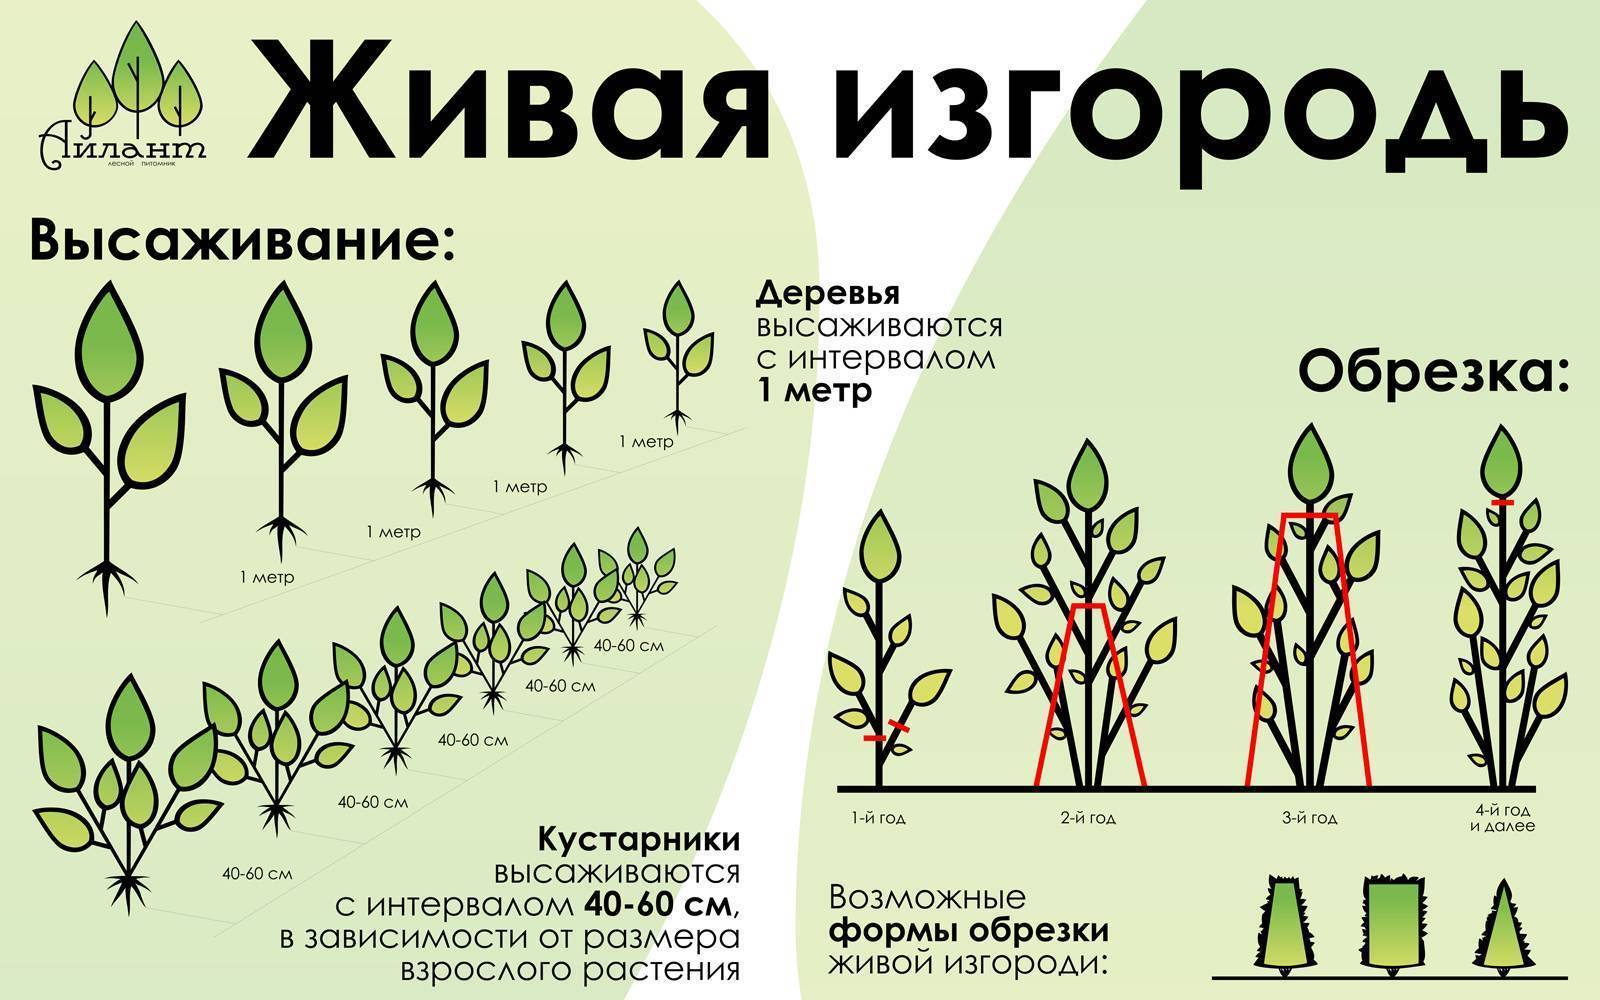 Выбор растений для живой изгороди: деревья и кустарники, быстрорастущие и многолетние